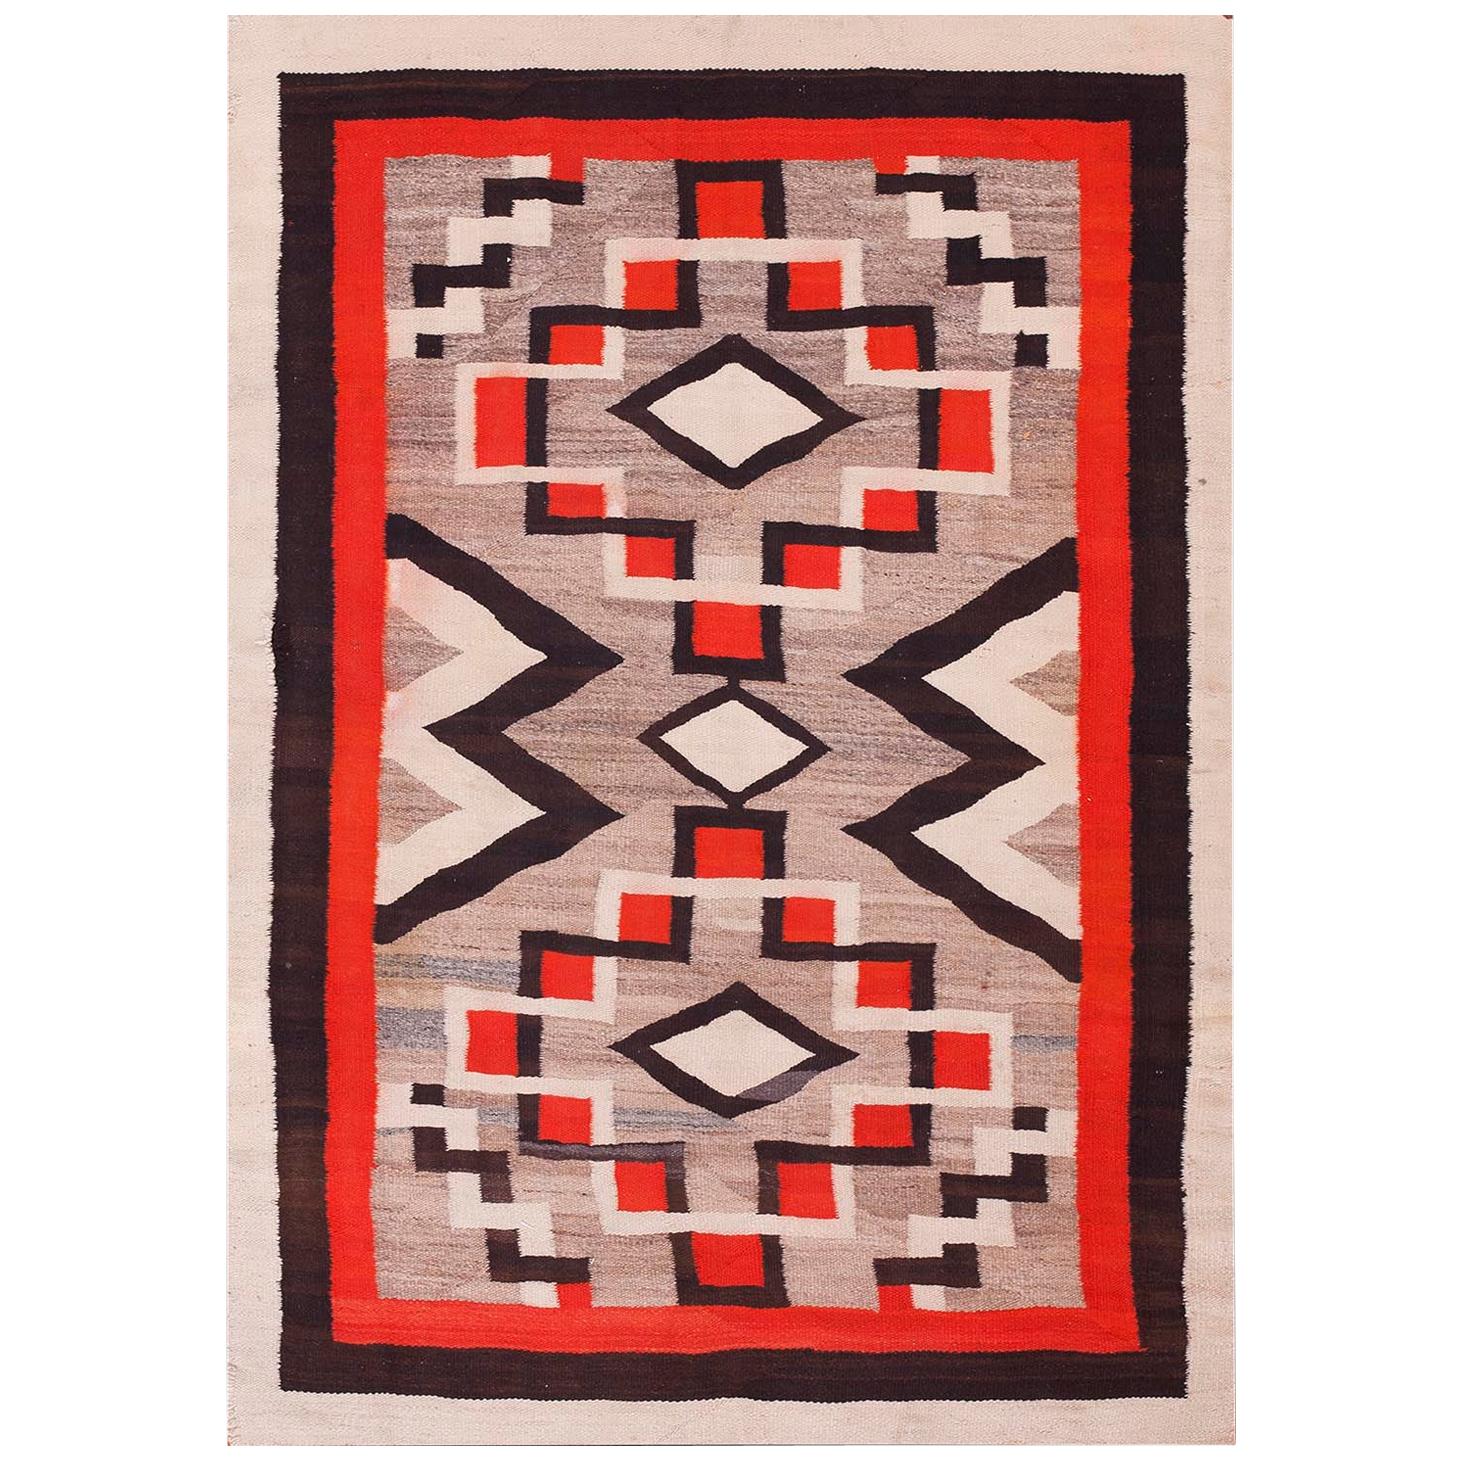 Amerikanischer Navajo-Teppich des frühen 20. Jahrhunderts ( 4' x 5'8" - 122 x 173)